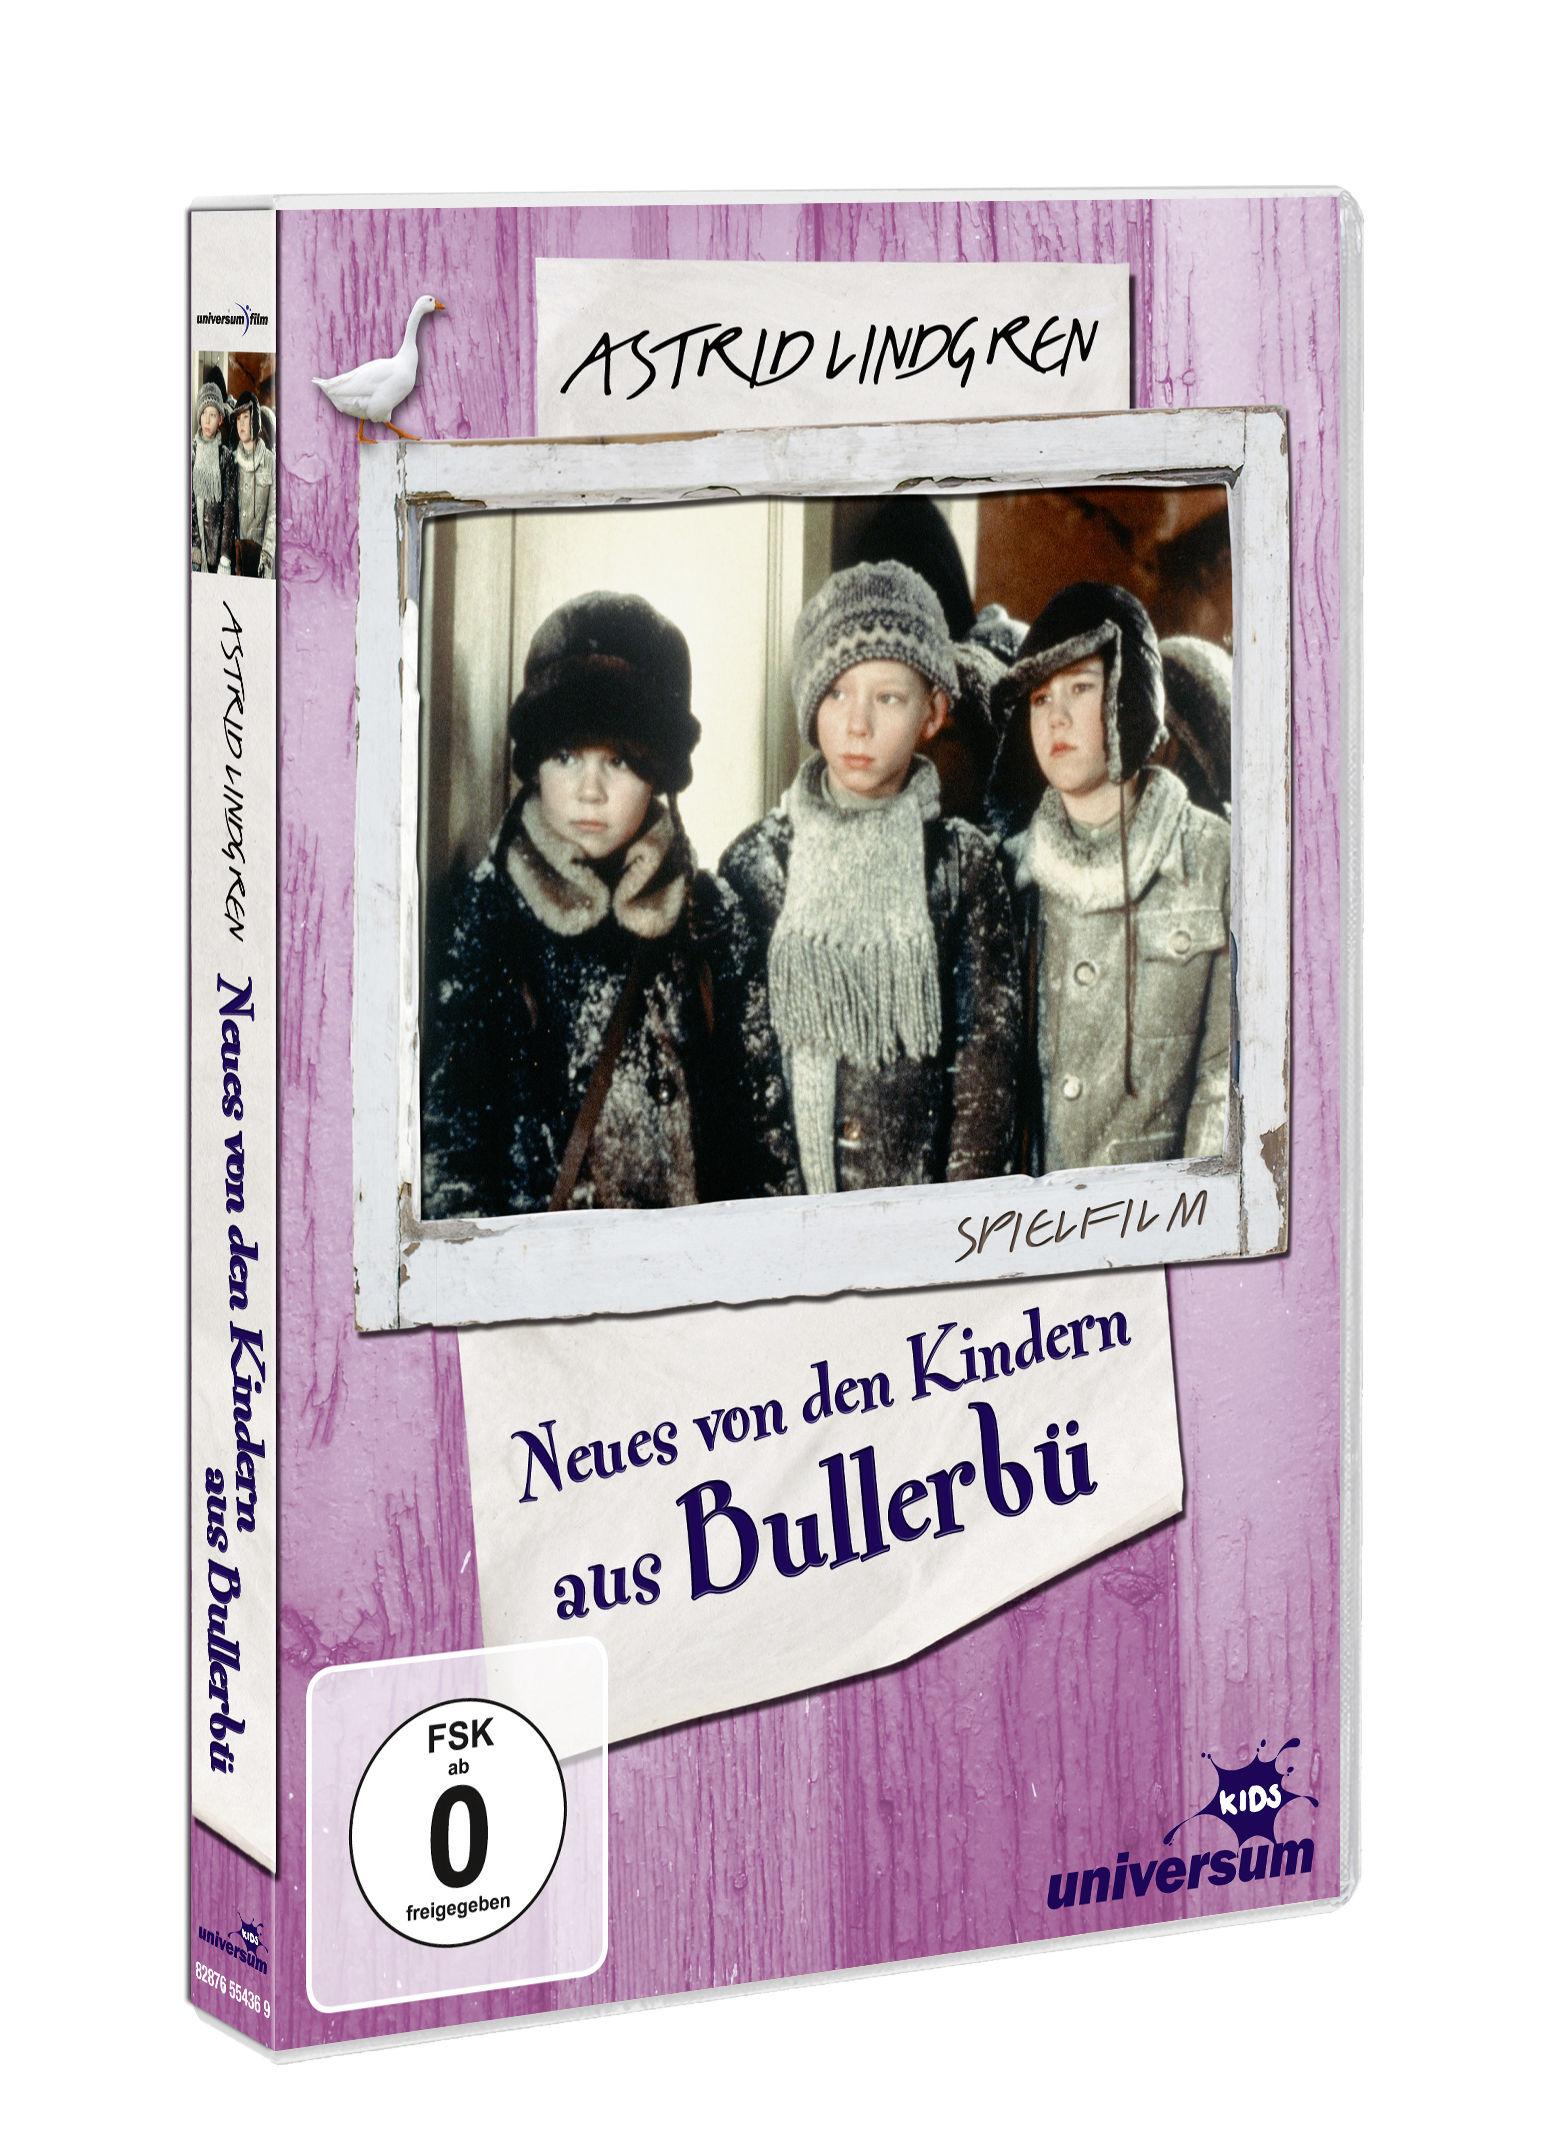 Neues von den Kindern aus DVD Büllerbü